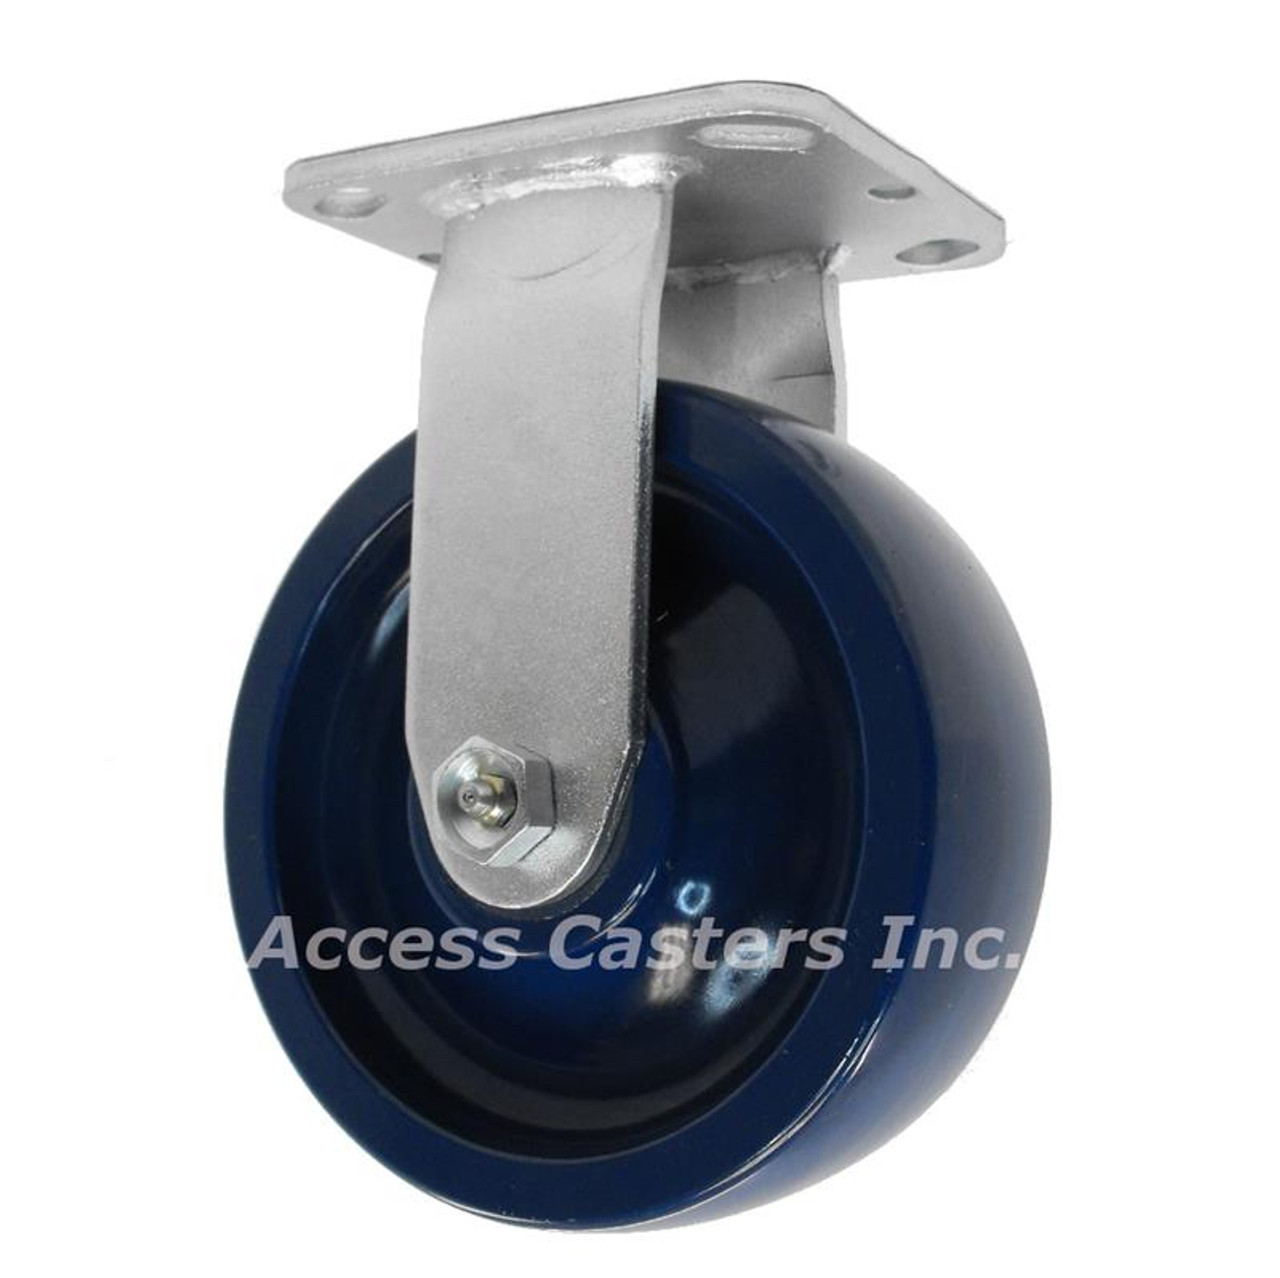 8 inch rigid caster with solid blue polyurethane wheel